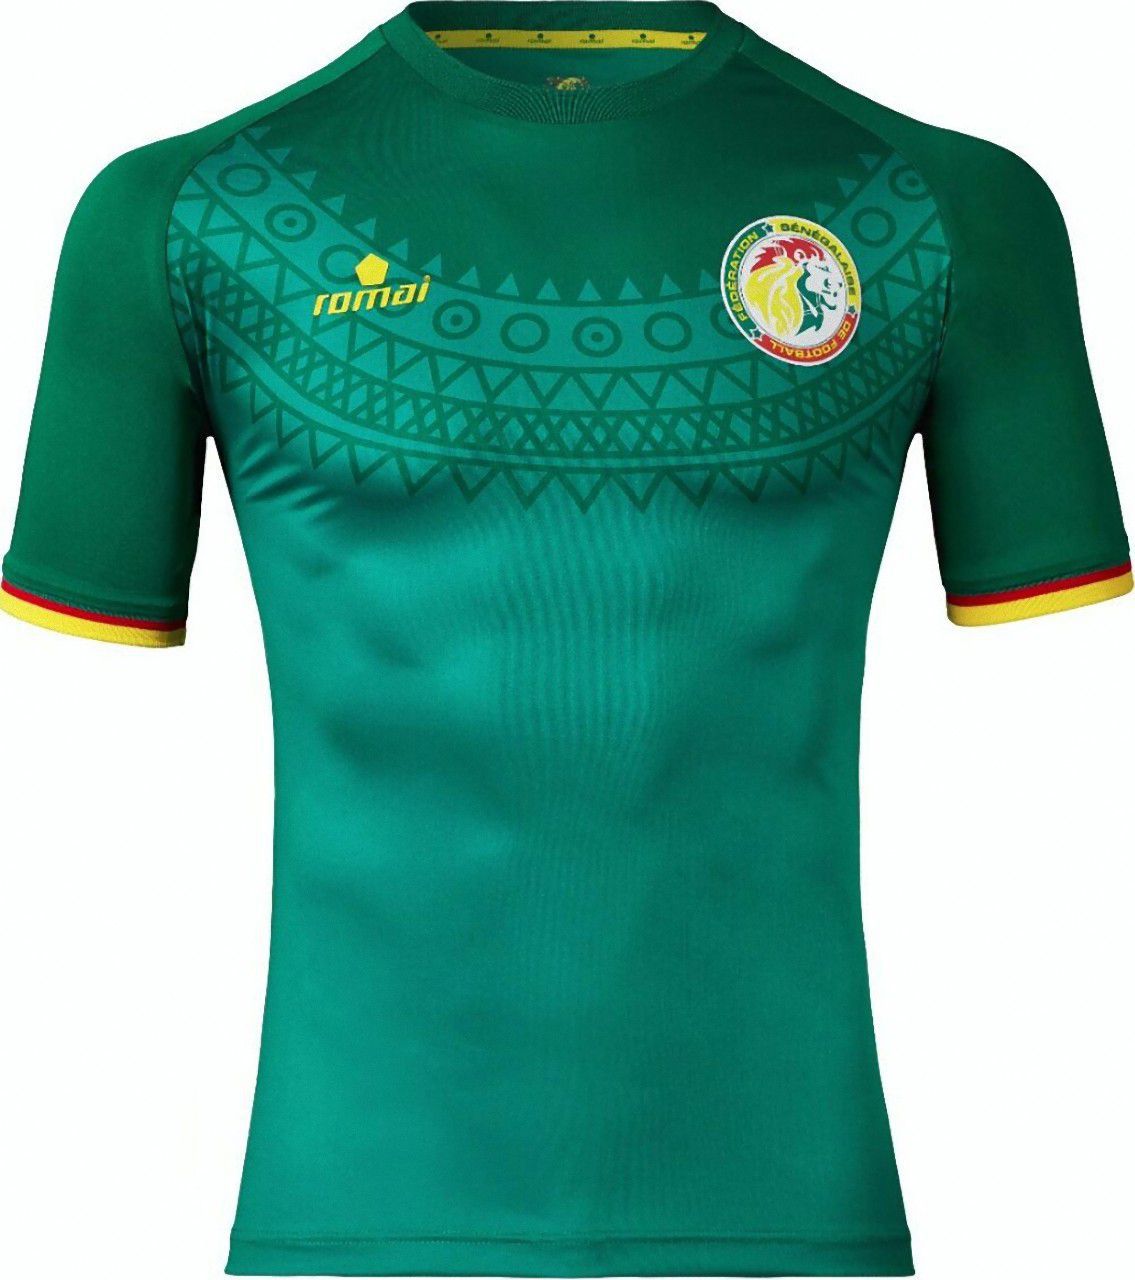 セネガル代表 アフリカネイションズカップ17 ユニフォーム ユニ11